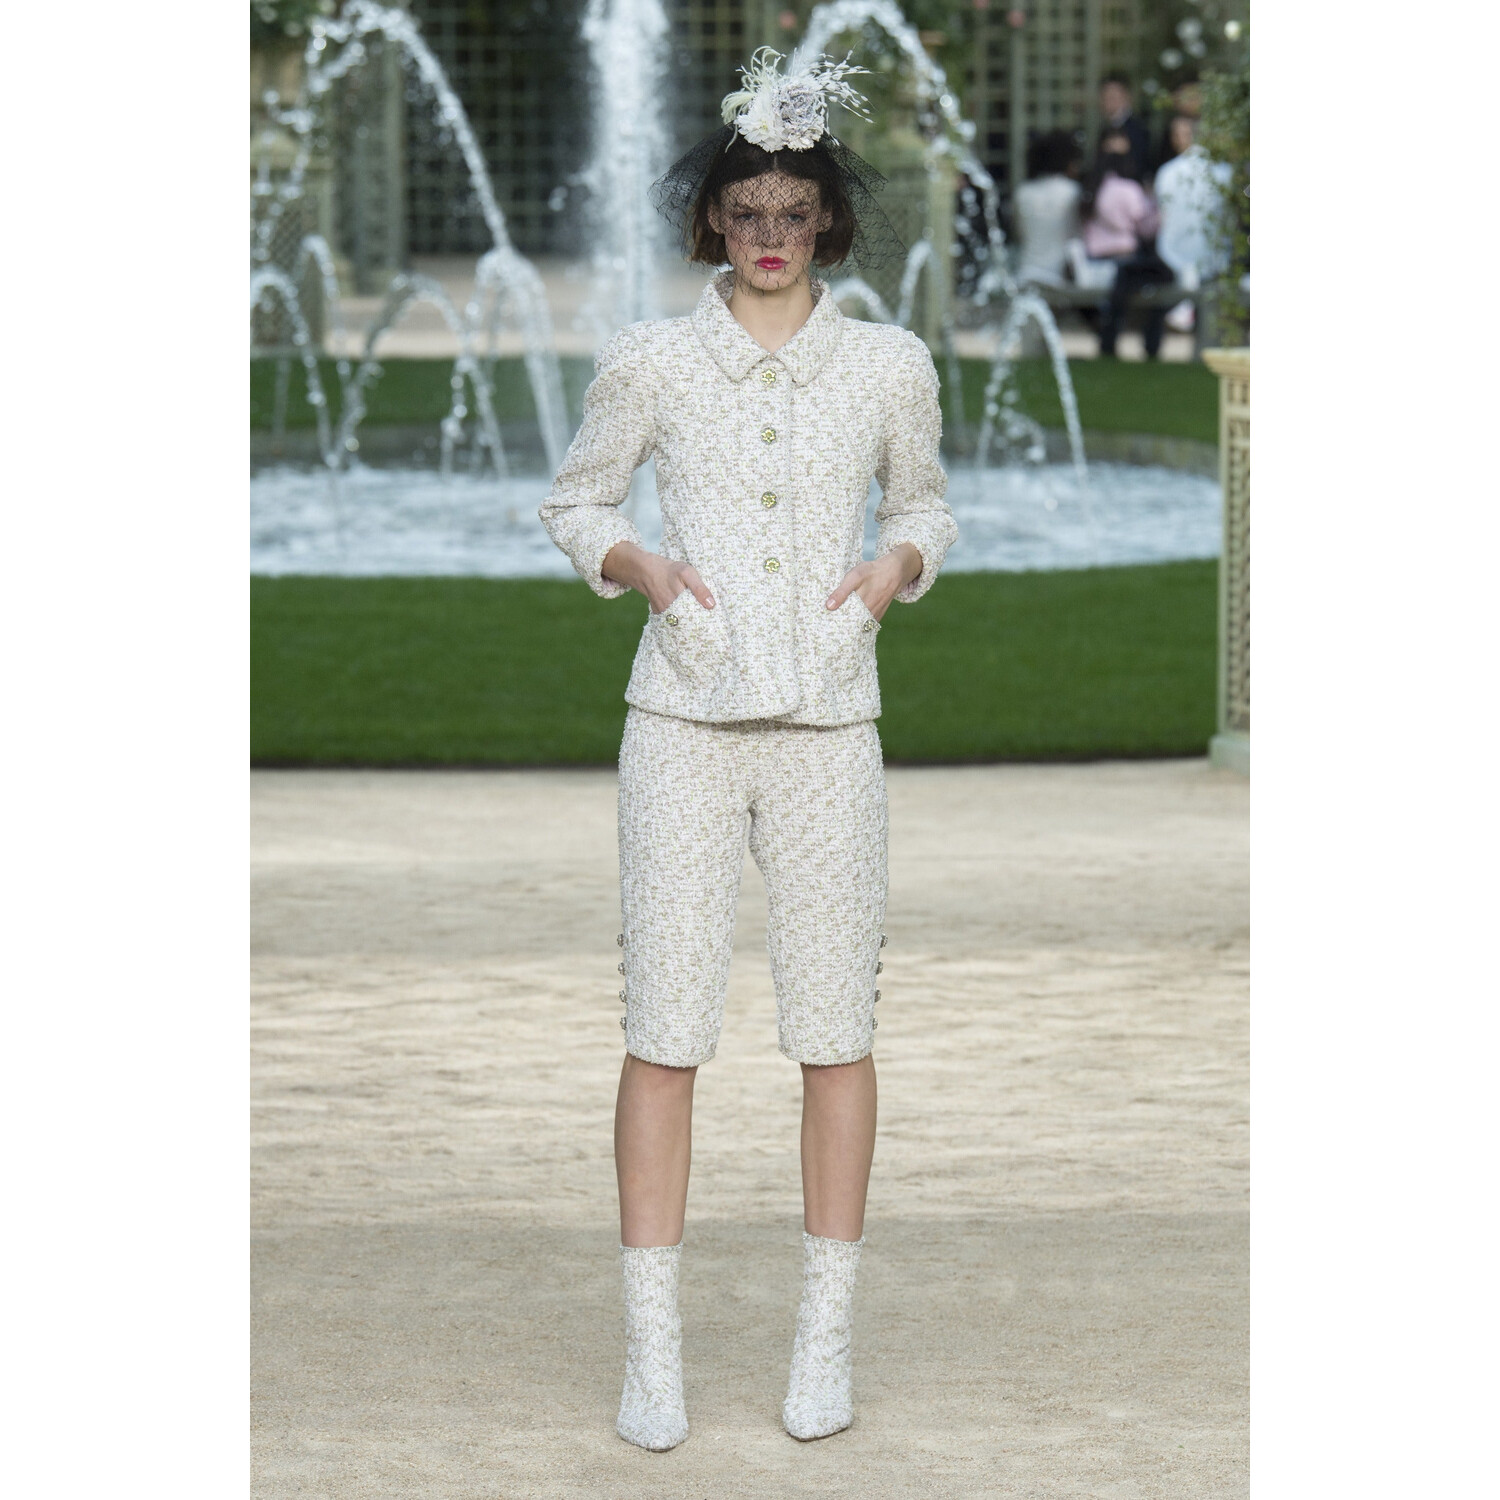 Фото Chanel SPRING 2018 COUTURE Paris PFW коллекция 2018 Шанель лето 2018 неделя высокой моды в Париже Mainstyles